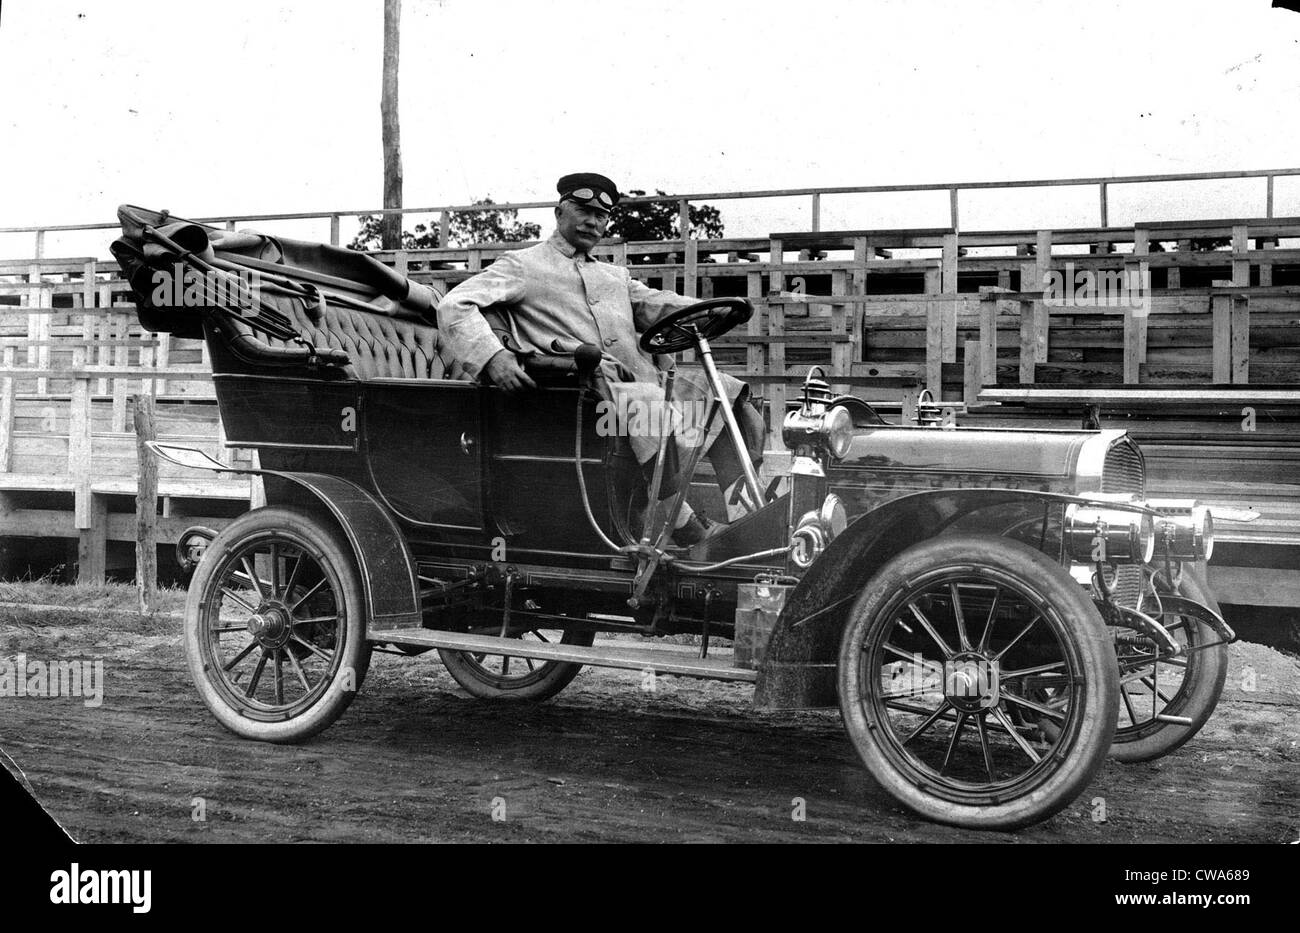 CORBIN AUTO-Corbin automobile usata ufficialmente dal Vanderbilt Cup gara Comitato, 1906.. La cortesia: CSU Archivi / Everett Foto Stock